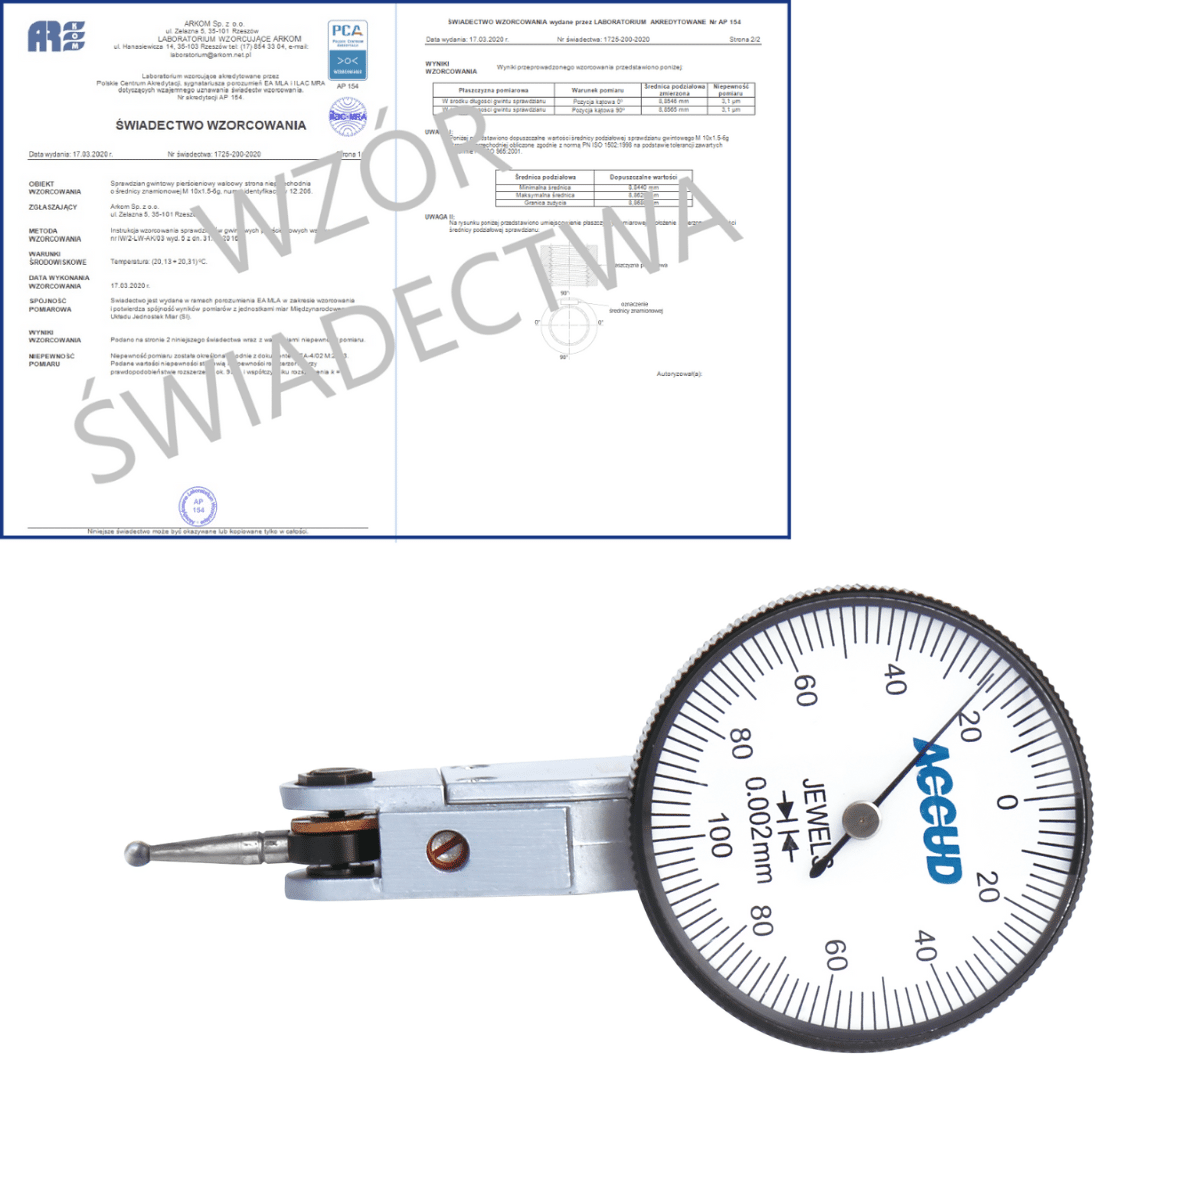 ACCUD czujnik dźwigniowo-zębaty poziomy 0-0.02/0.002 mm + świadectwo wzorcowania PCA 261-002-01 WZORC